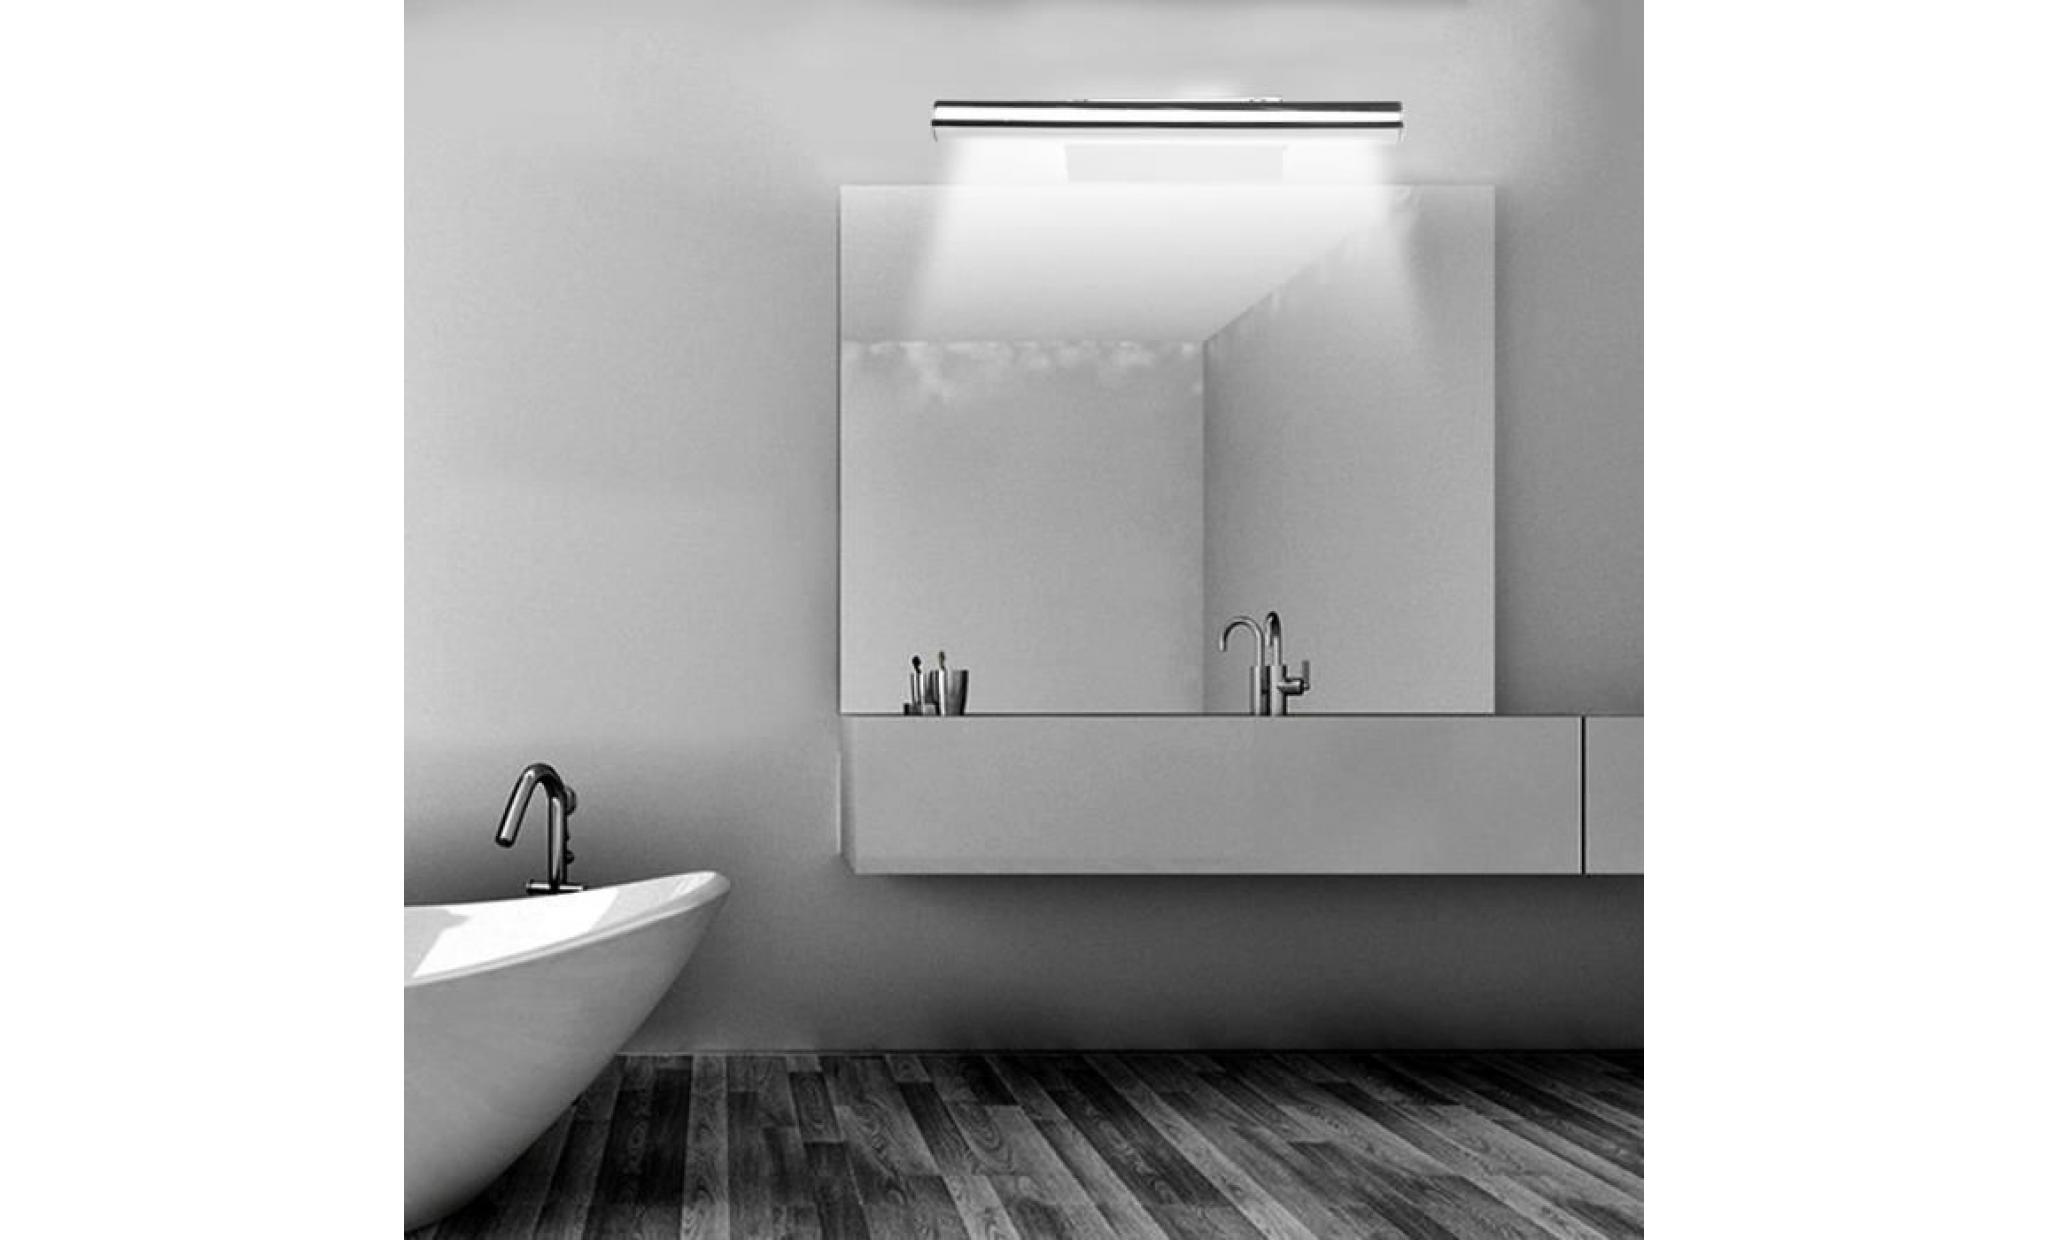 3w 5050smd 12led lampe murale applique blanc salle de bain miroir meuble tableau mur + interrupteur acier inoxydable pas cher